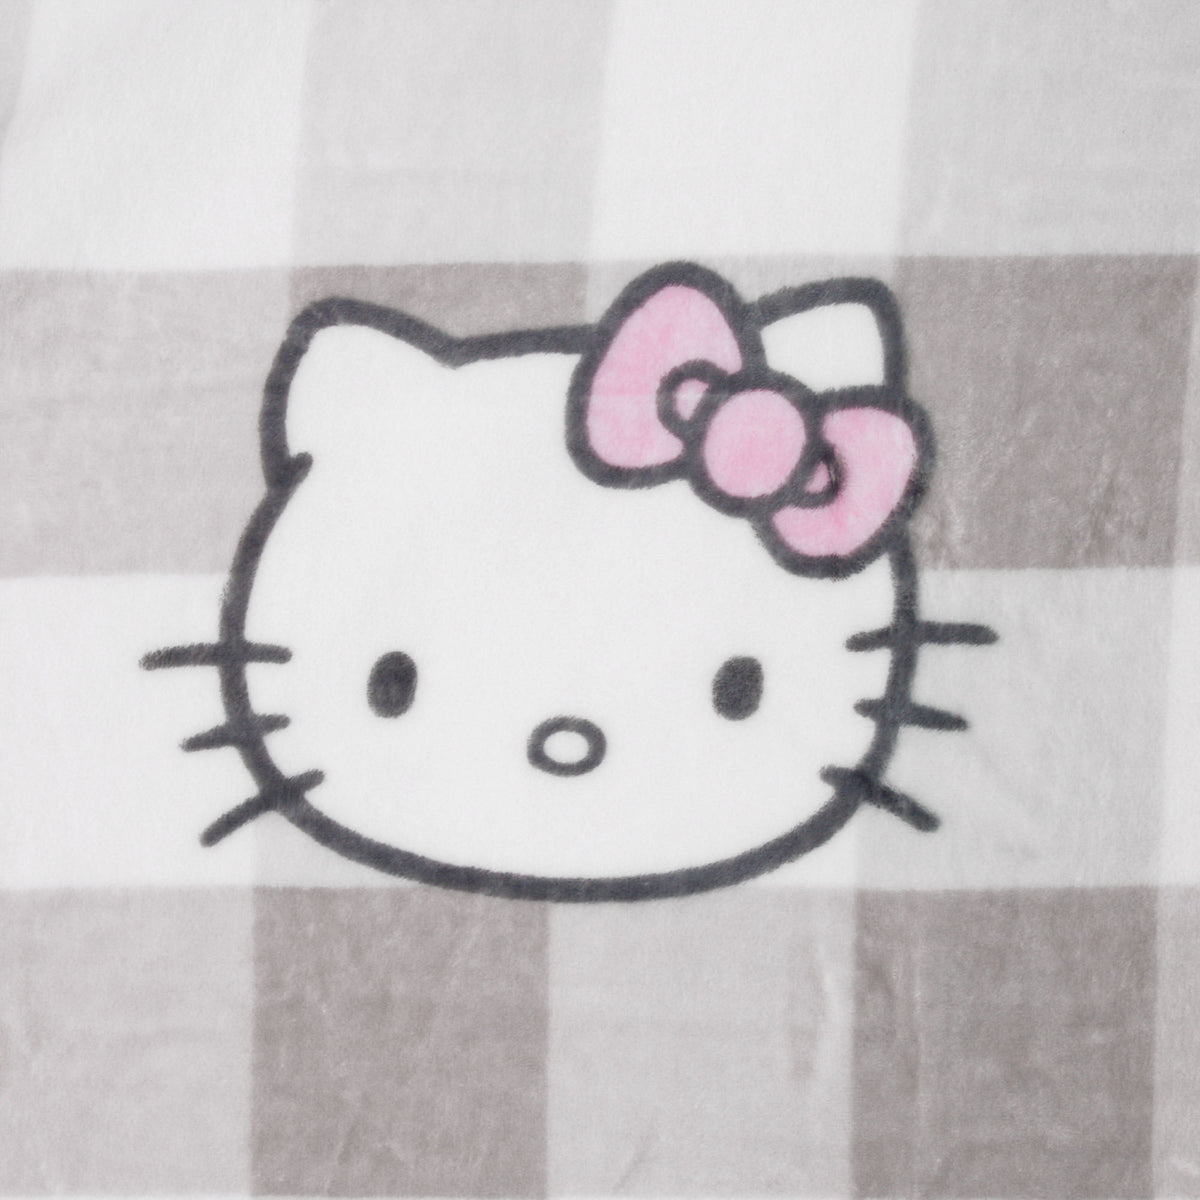 Hello Kitty Plush Throw Blanket 50x70 Grey Plaid Blanket